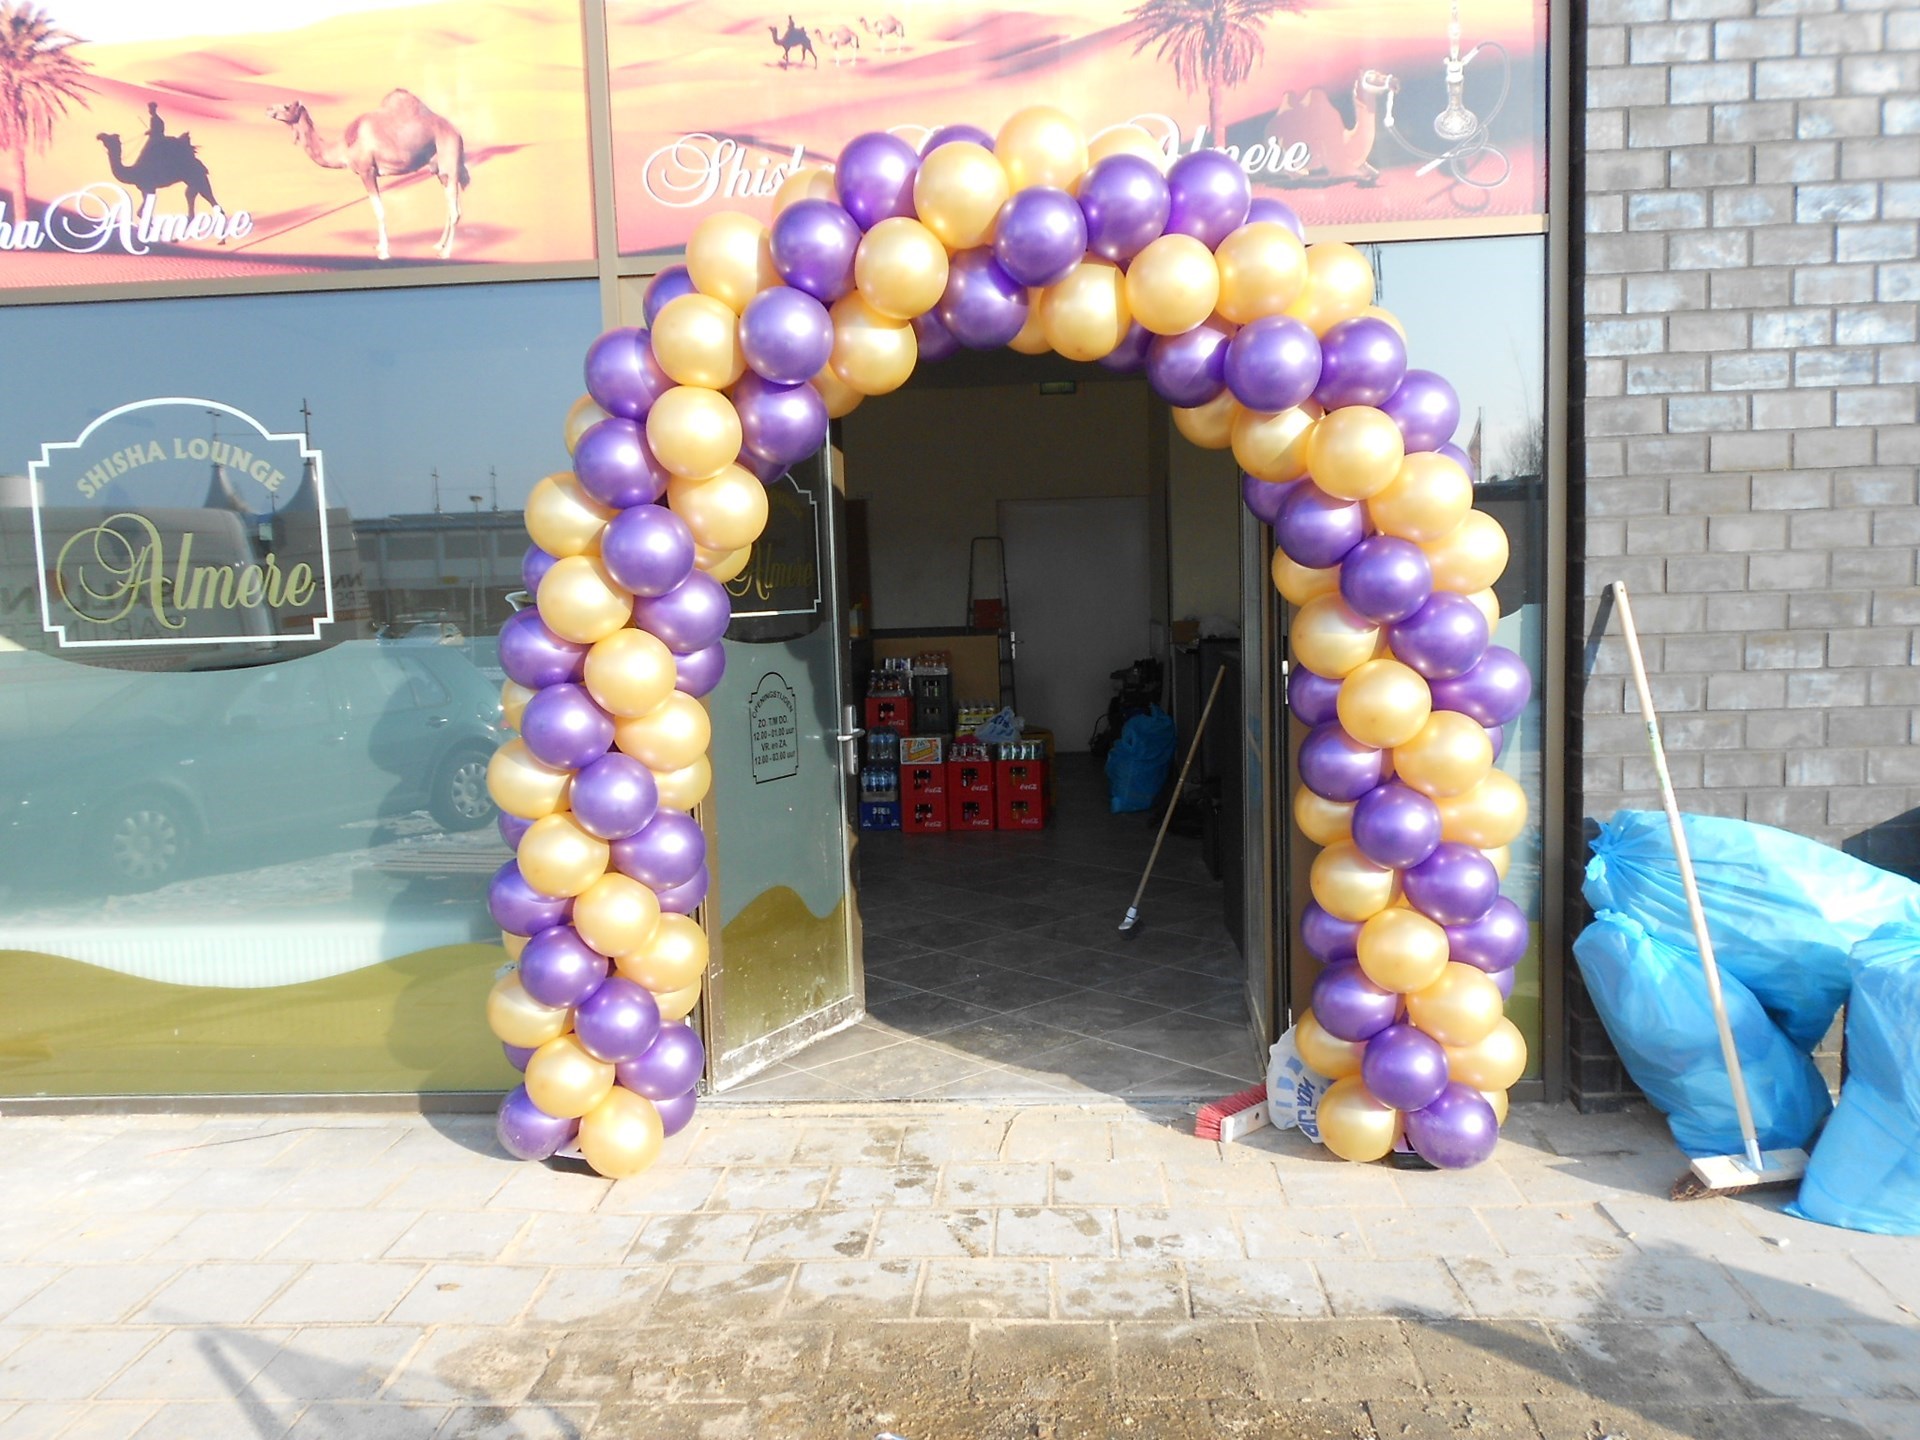 opening nieuw winkel Almere met ballonnenboog bij entree